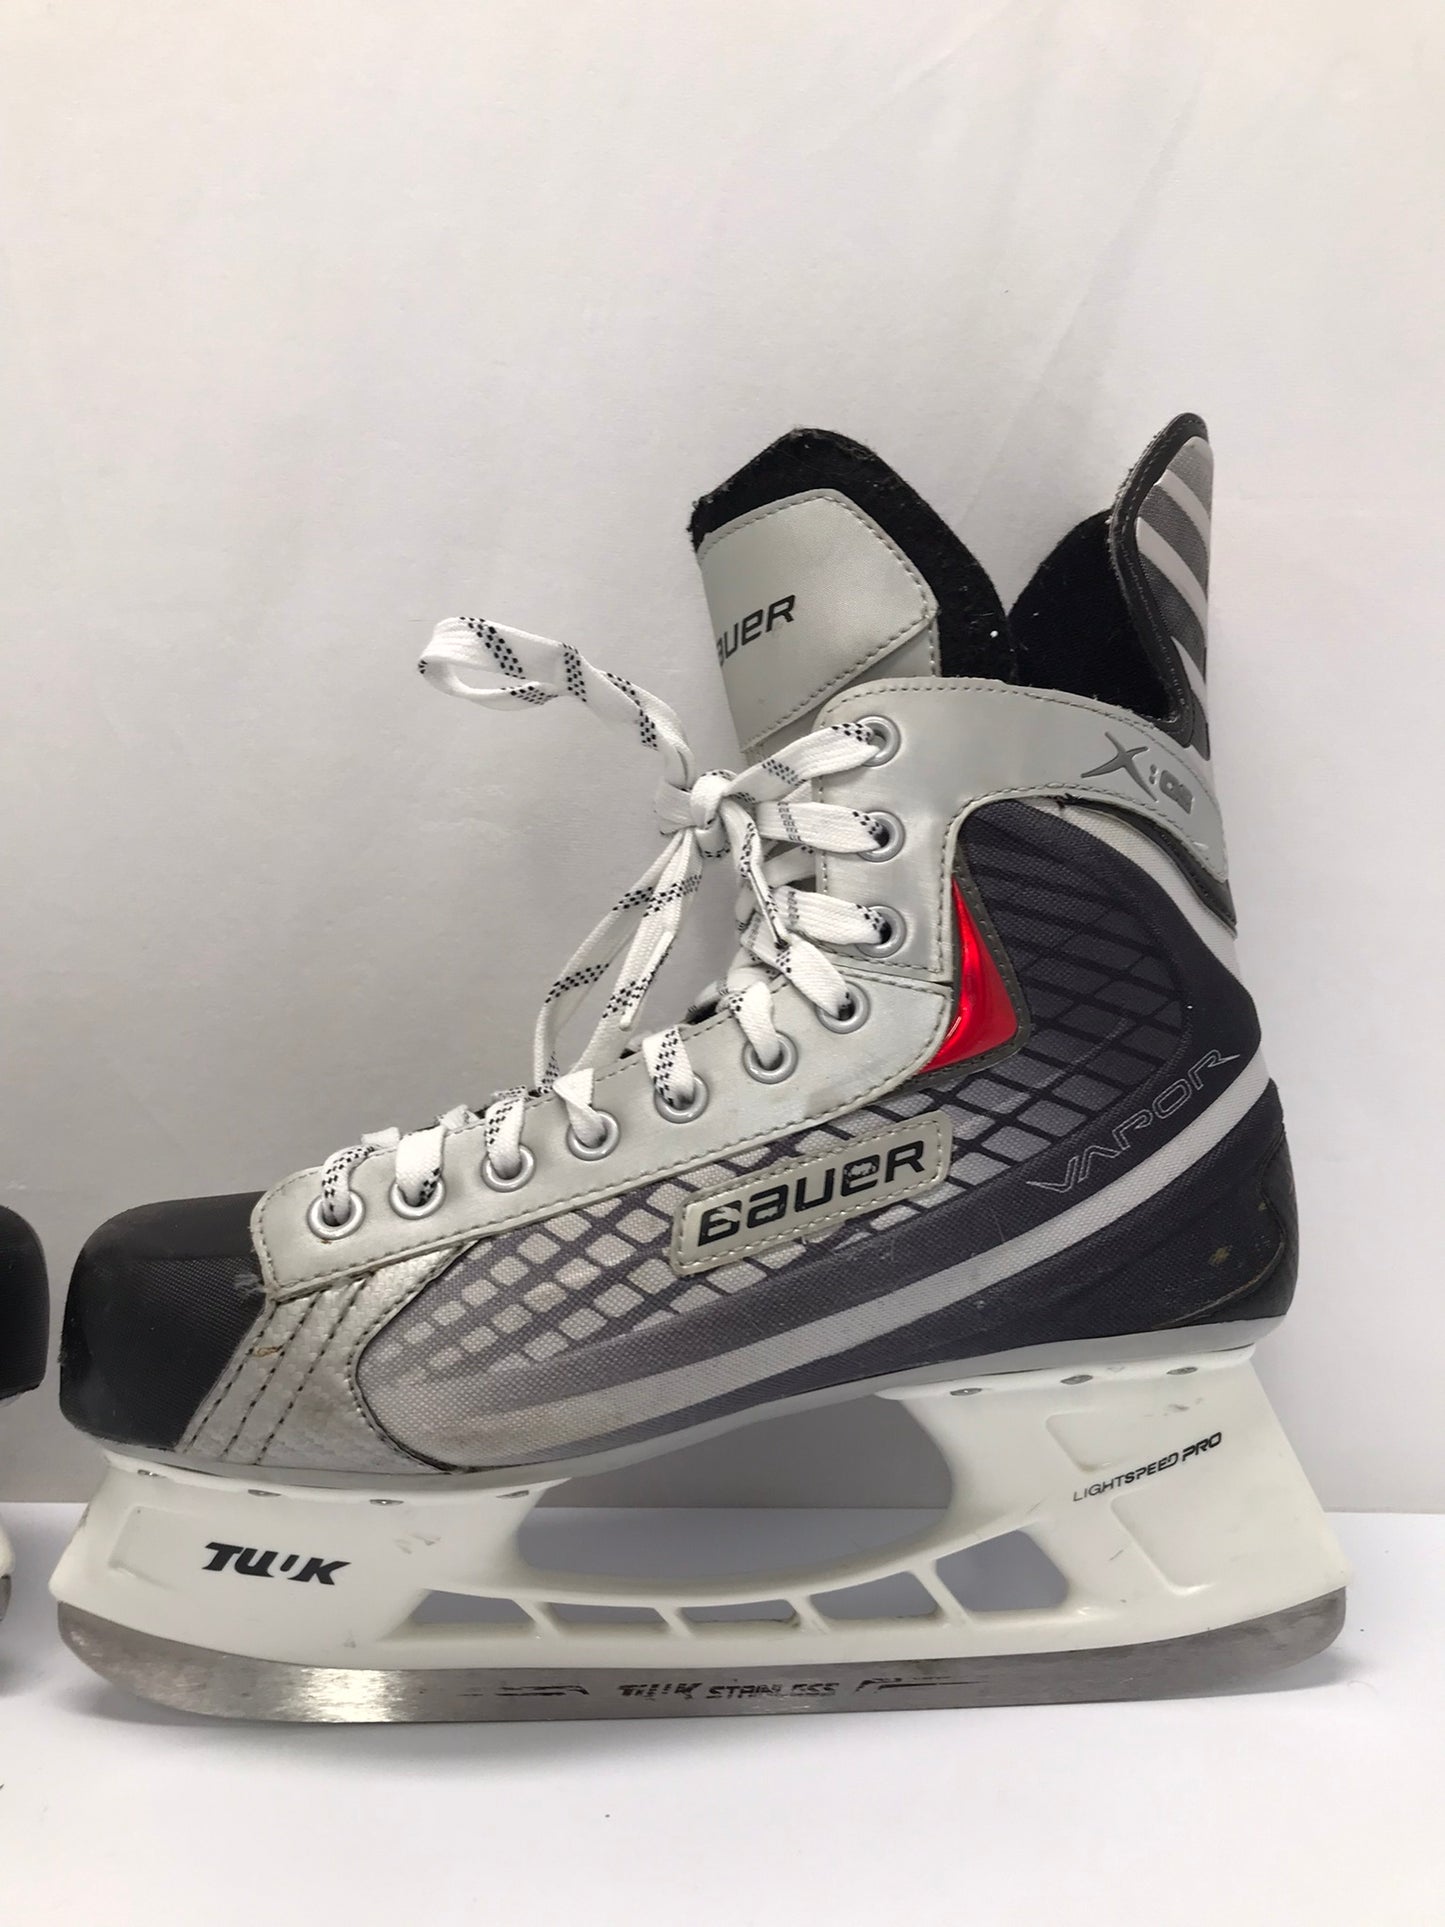 Hockey Skates Men's Size 10 Shoe Size Bauer Vapor X.05 Excellent As New